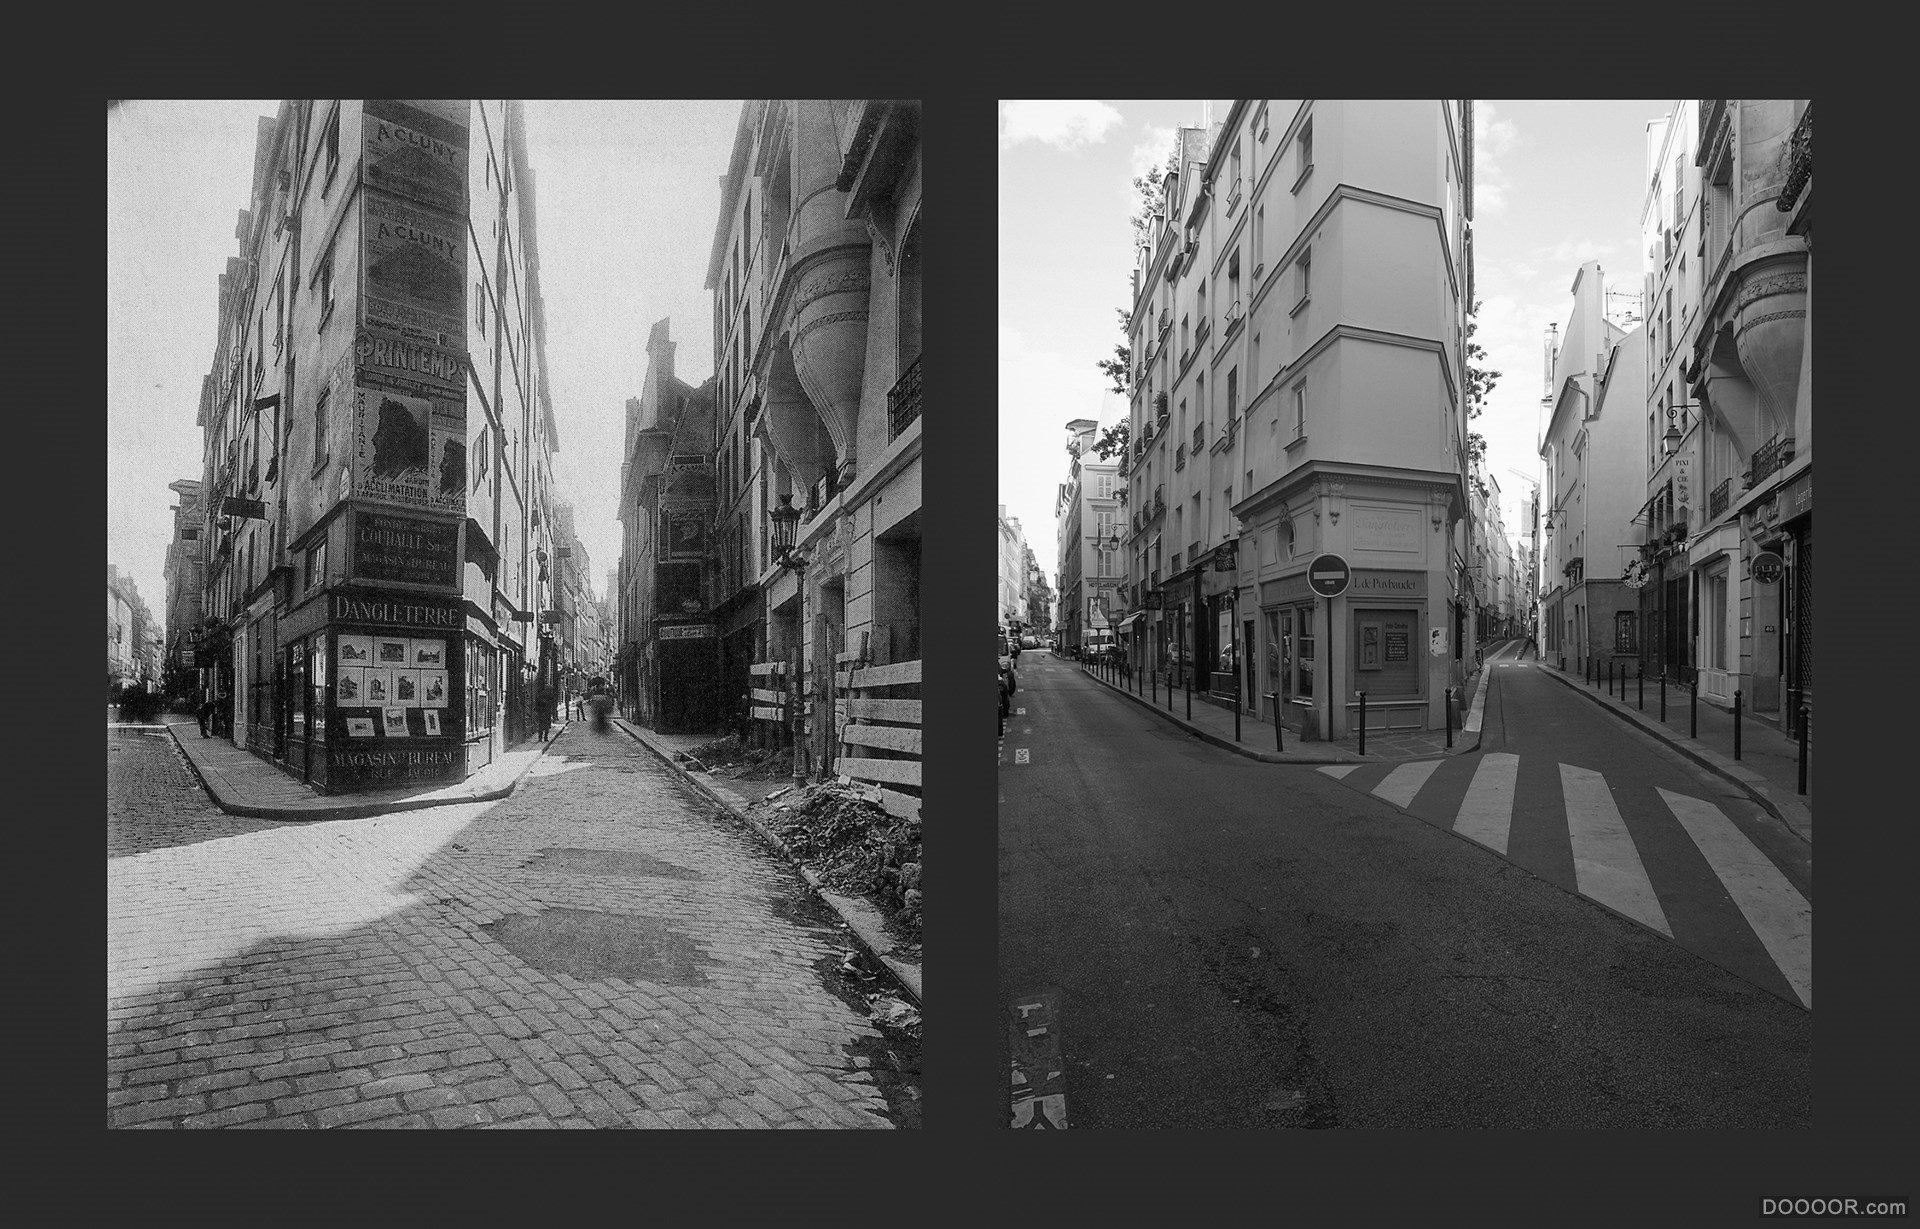 过去与现在-巴黎街头照片对比 [50P] (25).jpg